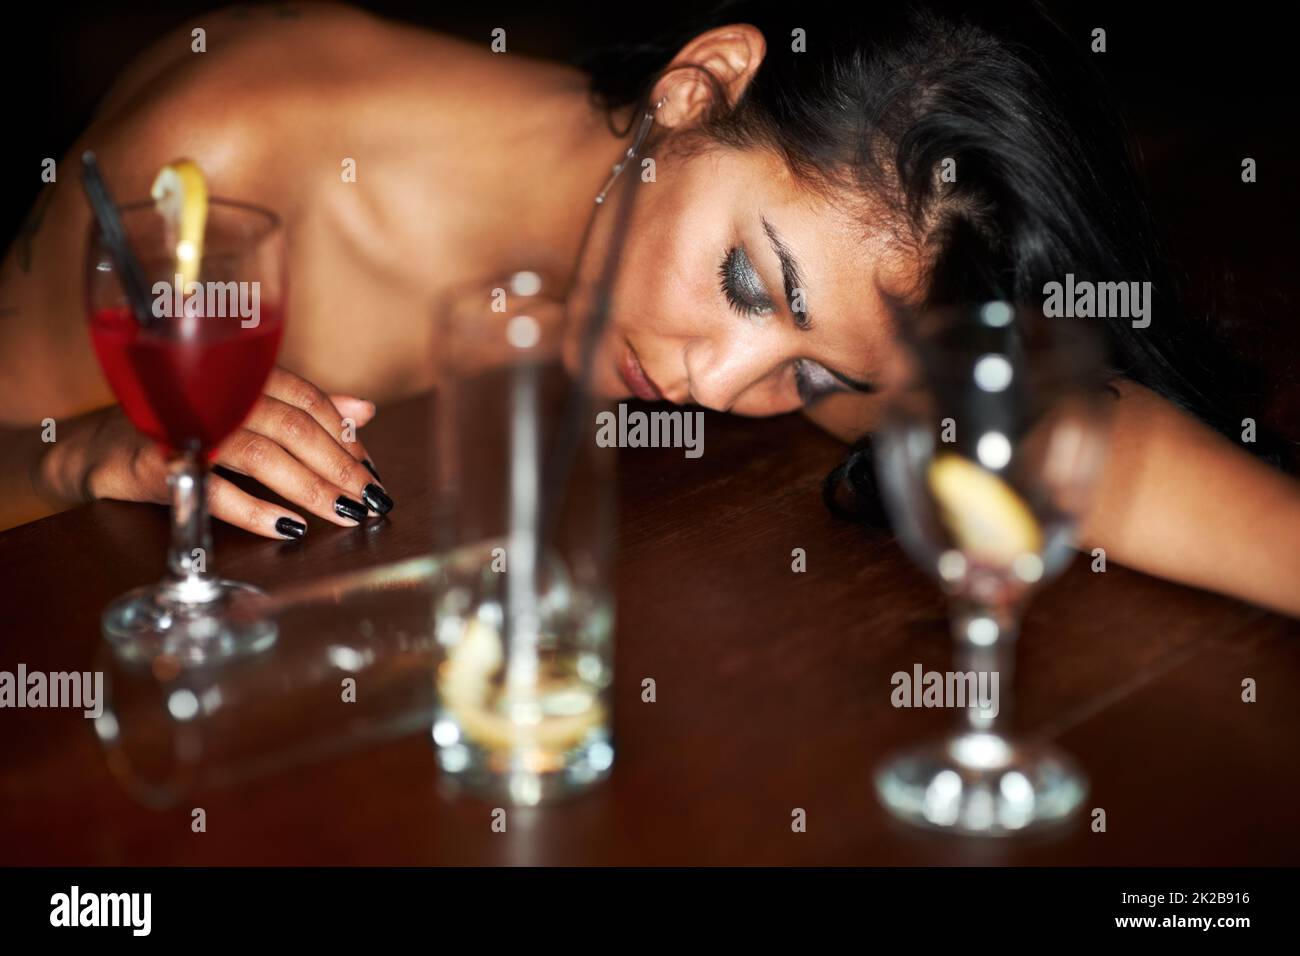 Ihre Nacht ist zu Ende. Ein betrunkenes junges Mädchen wurde an der Bar ohnmächtig, umgeben von halbfertigen Getränken. Stockfoto